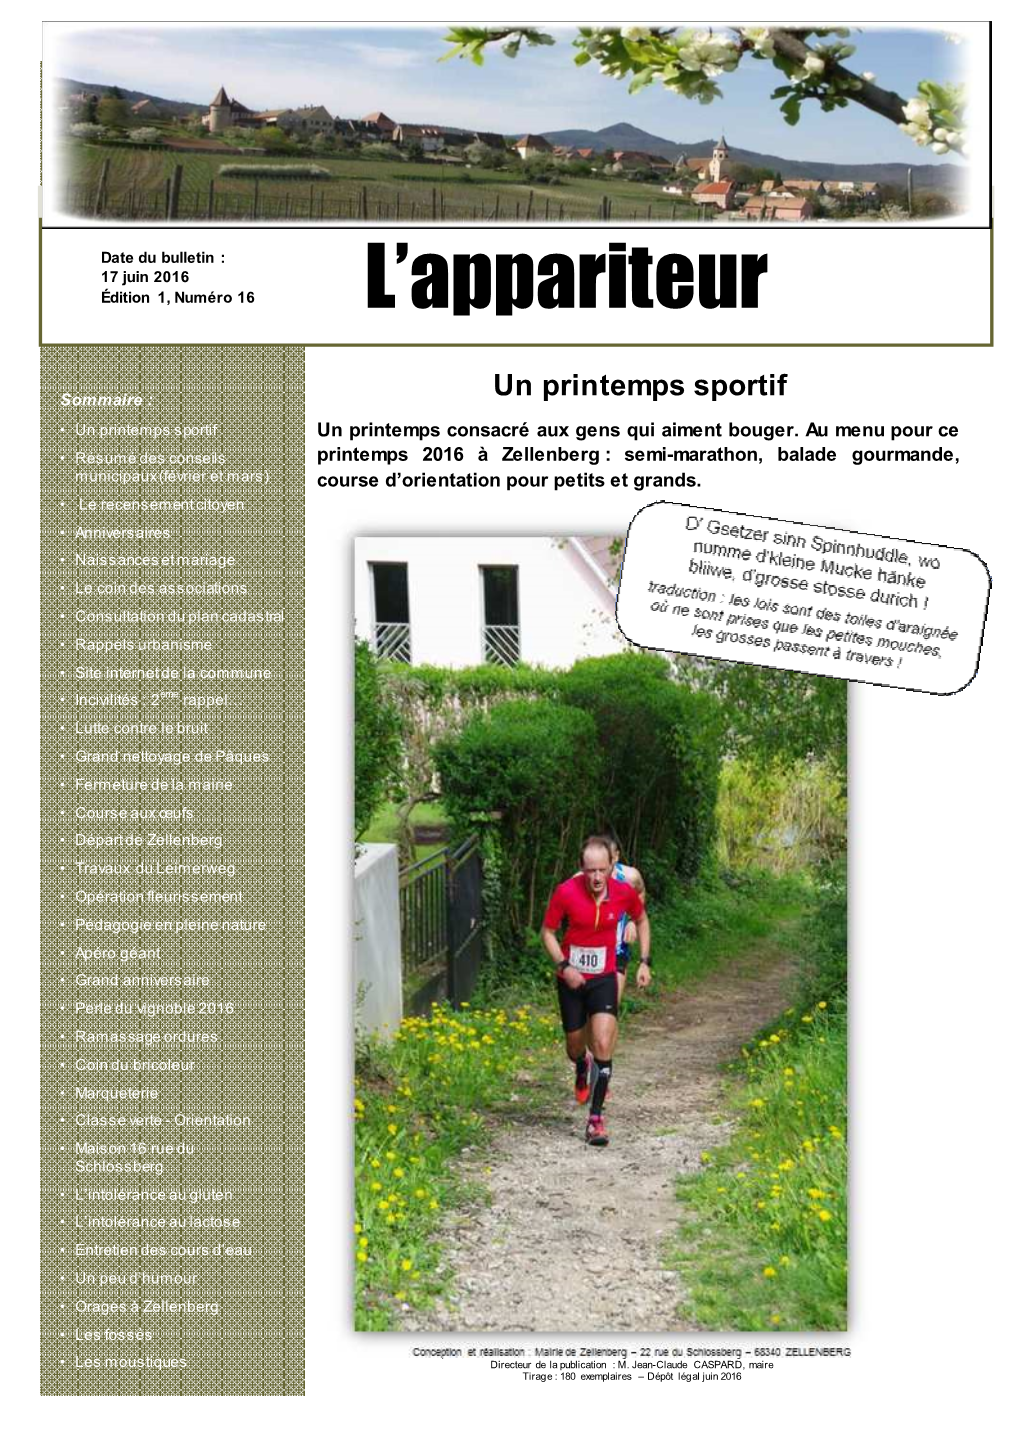 Zellenberg : Semi-Marathon, Balade Gourmande, Municipaux (Février Et Mars) Course D’Orientation Pour Petits Et Grands